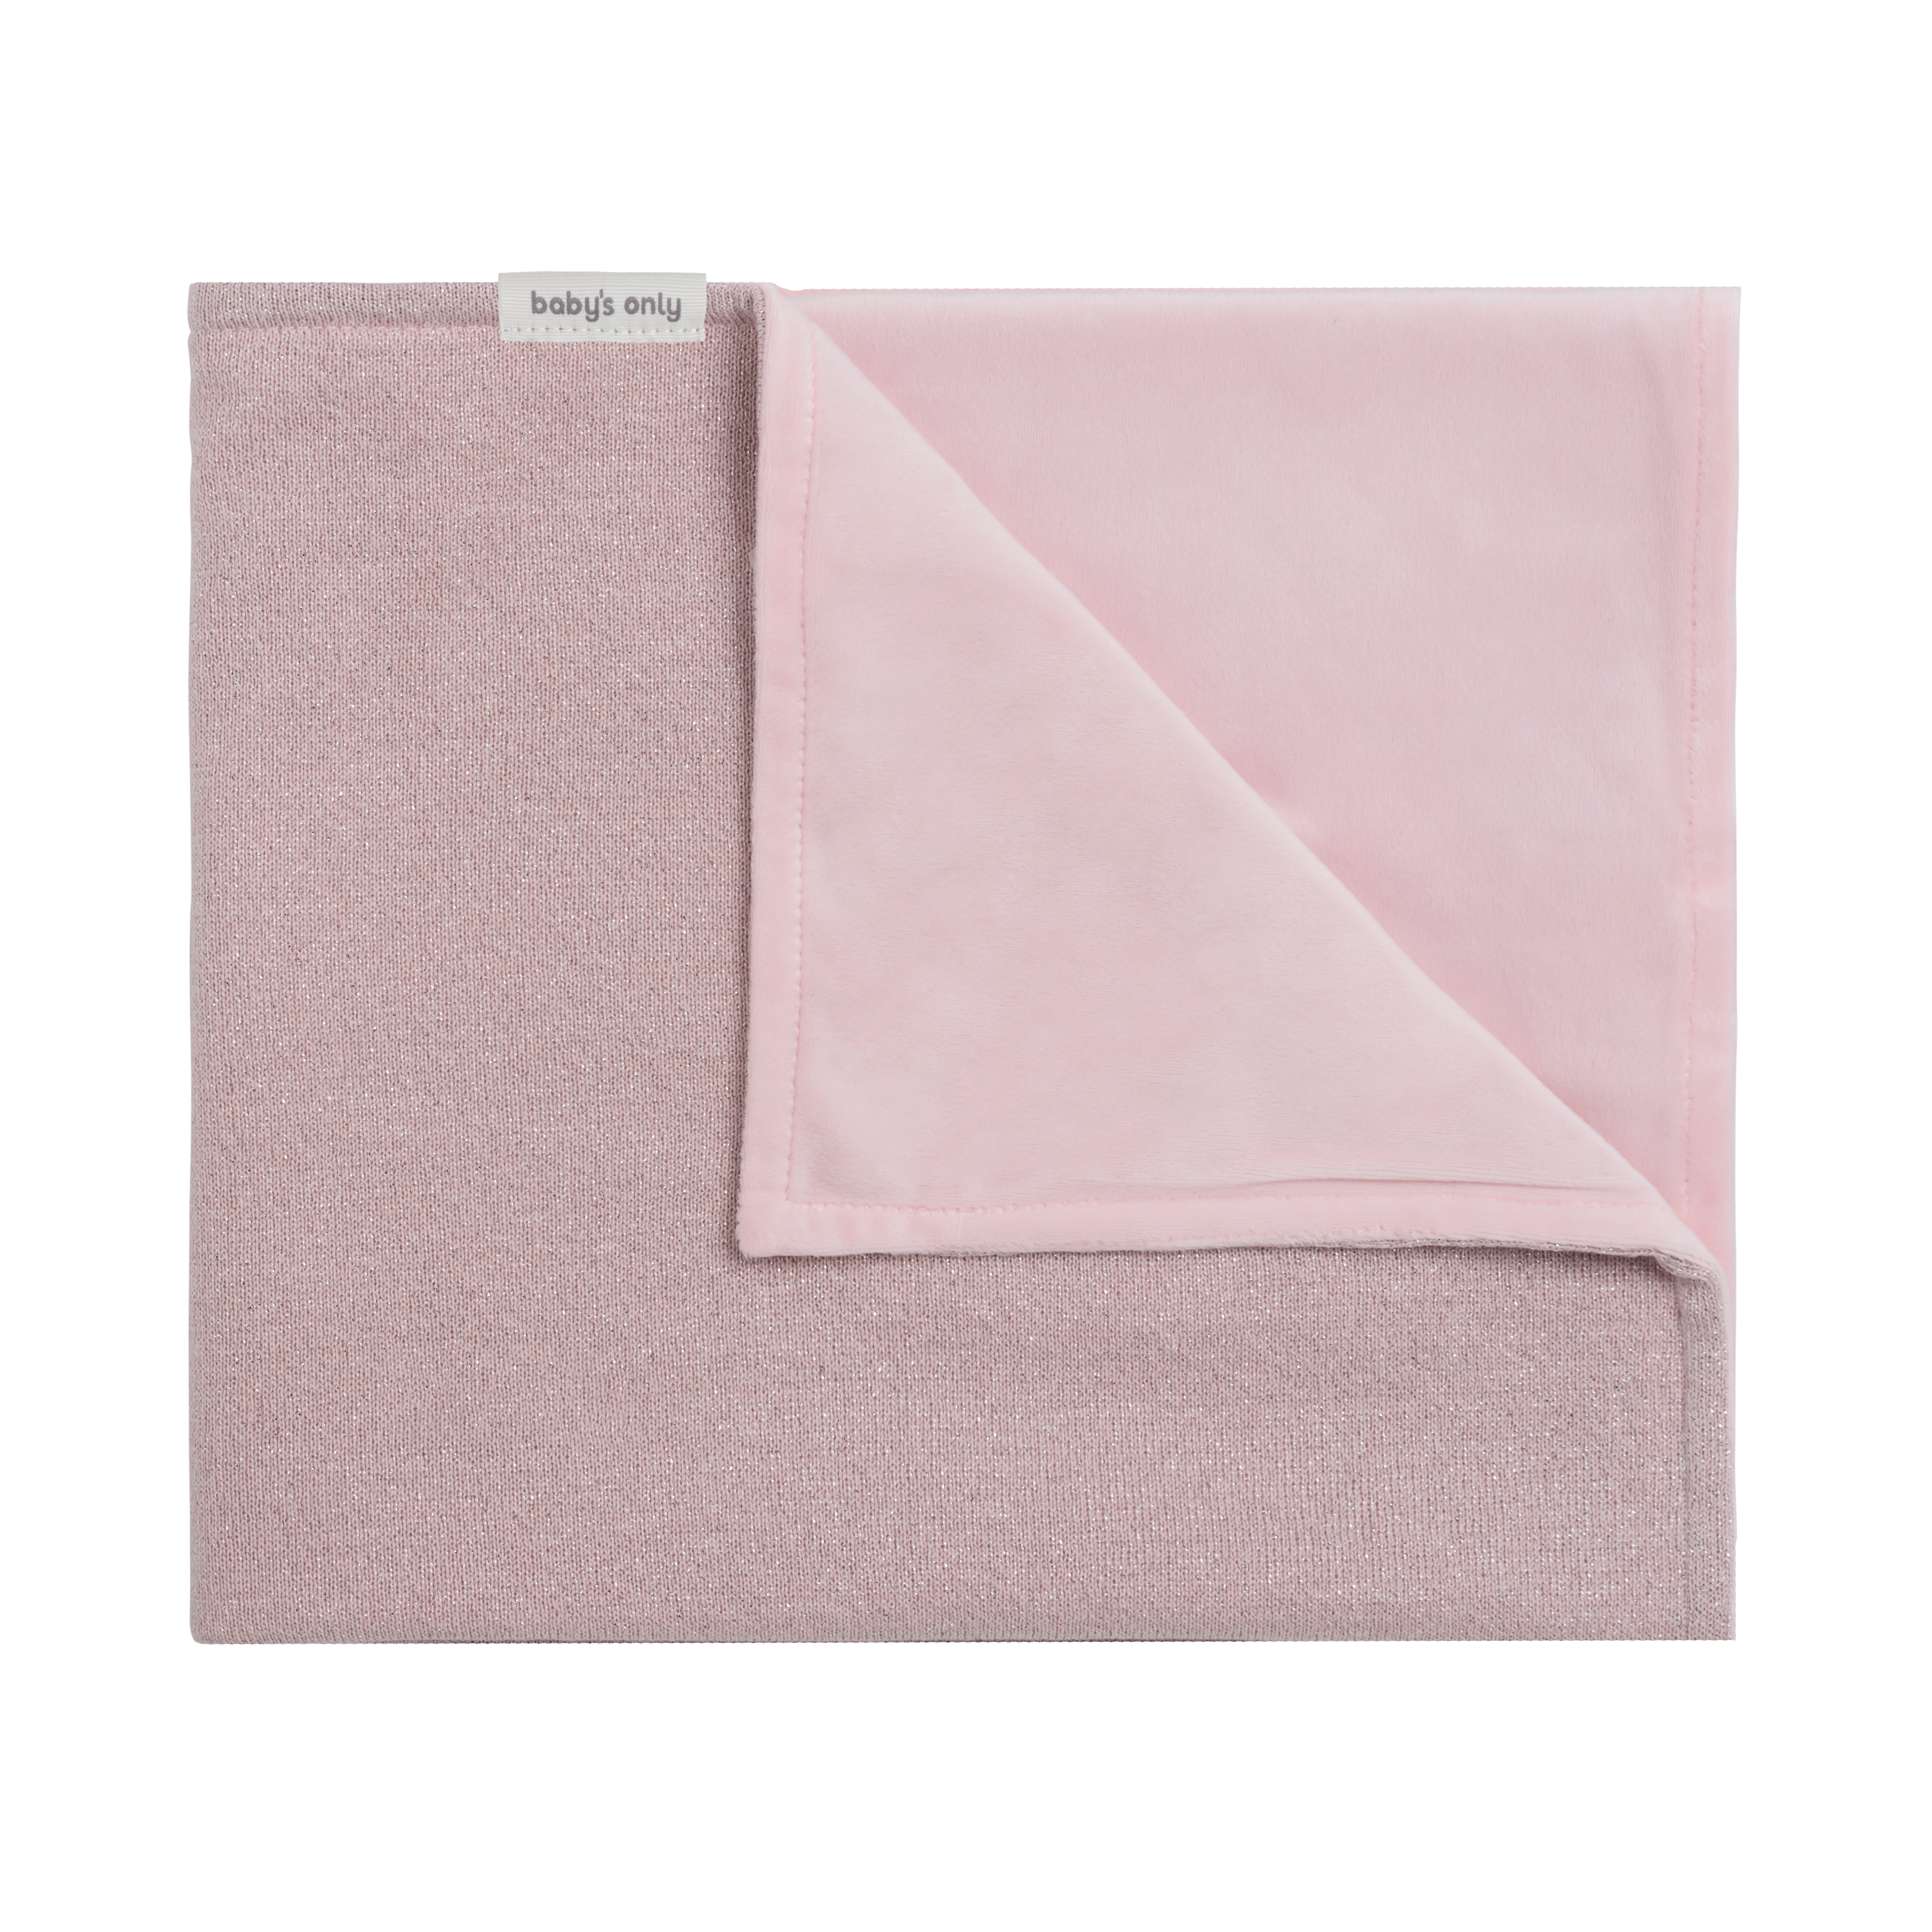 Cot blanket soft Sparkle silver-pink melee